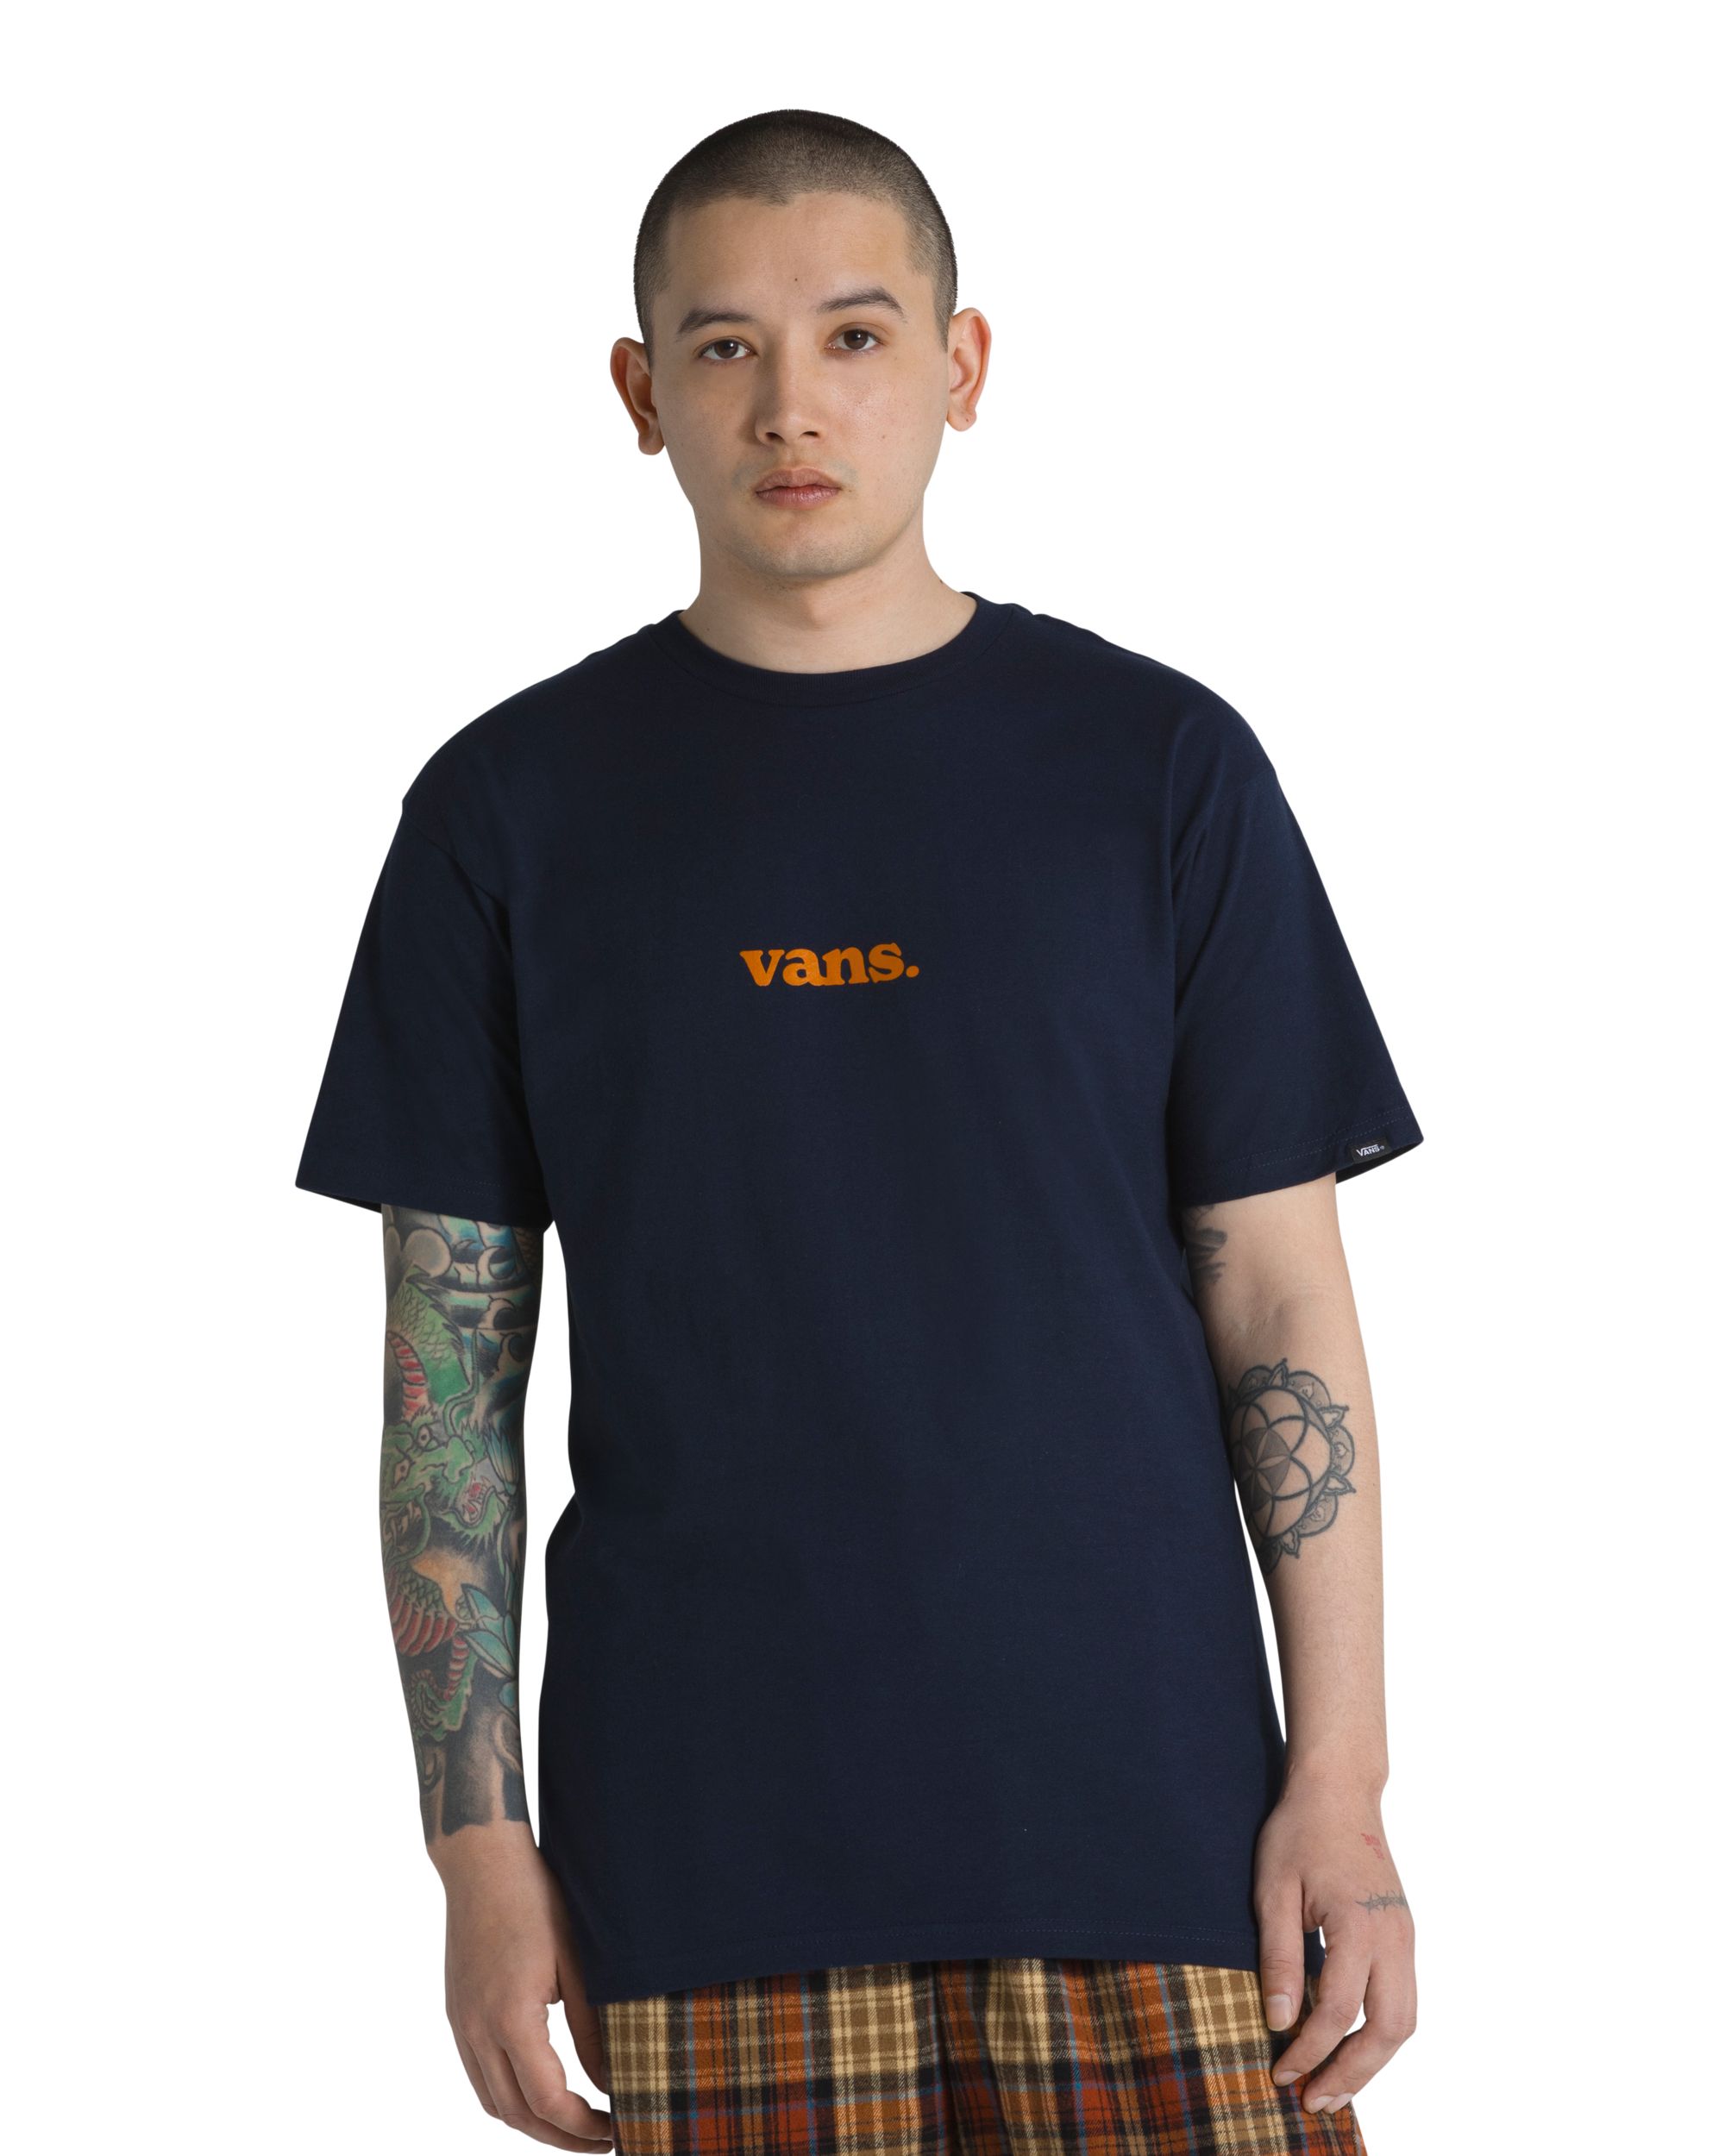 Image of Vans Men's New Lowercase Branded Type T Shirt